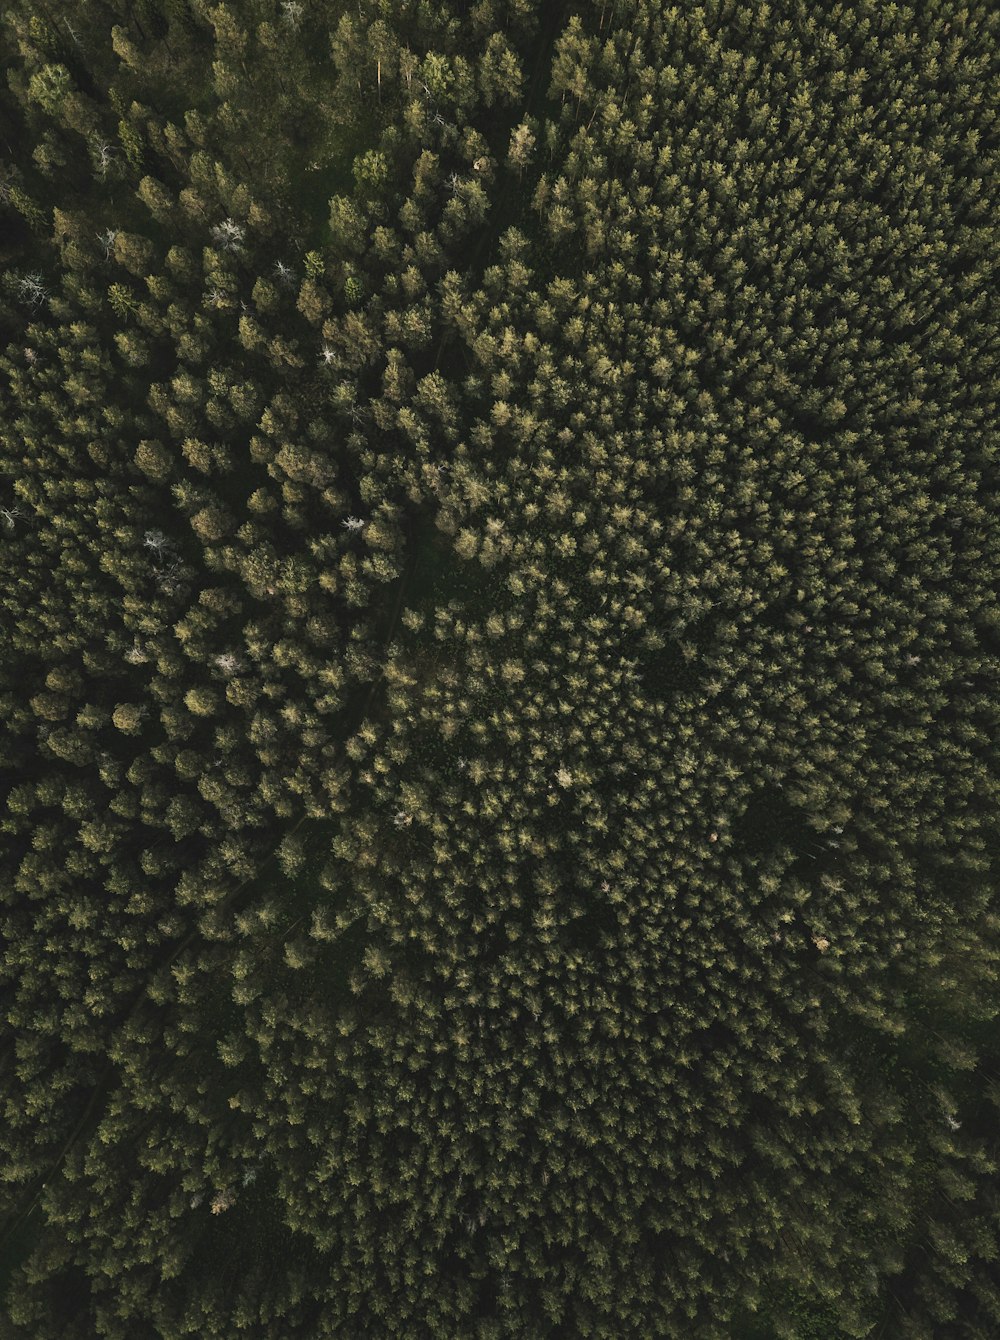 Photographie aérienne de grands arbres verts